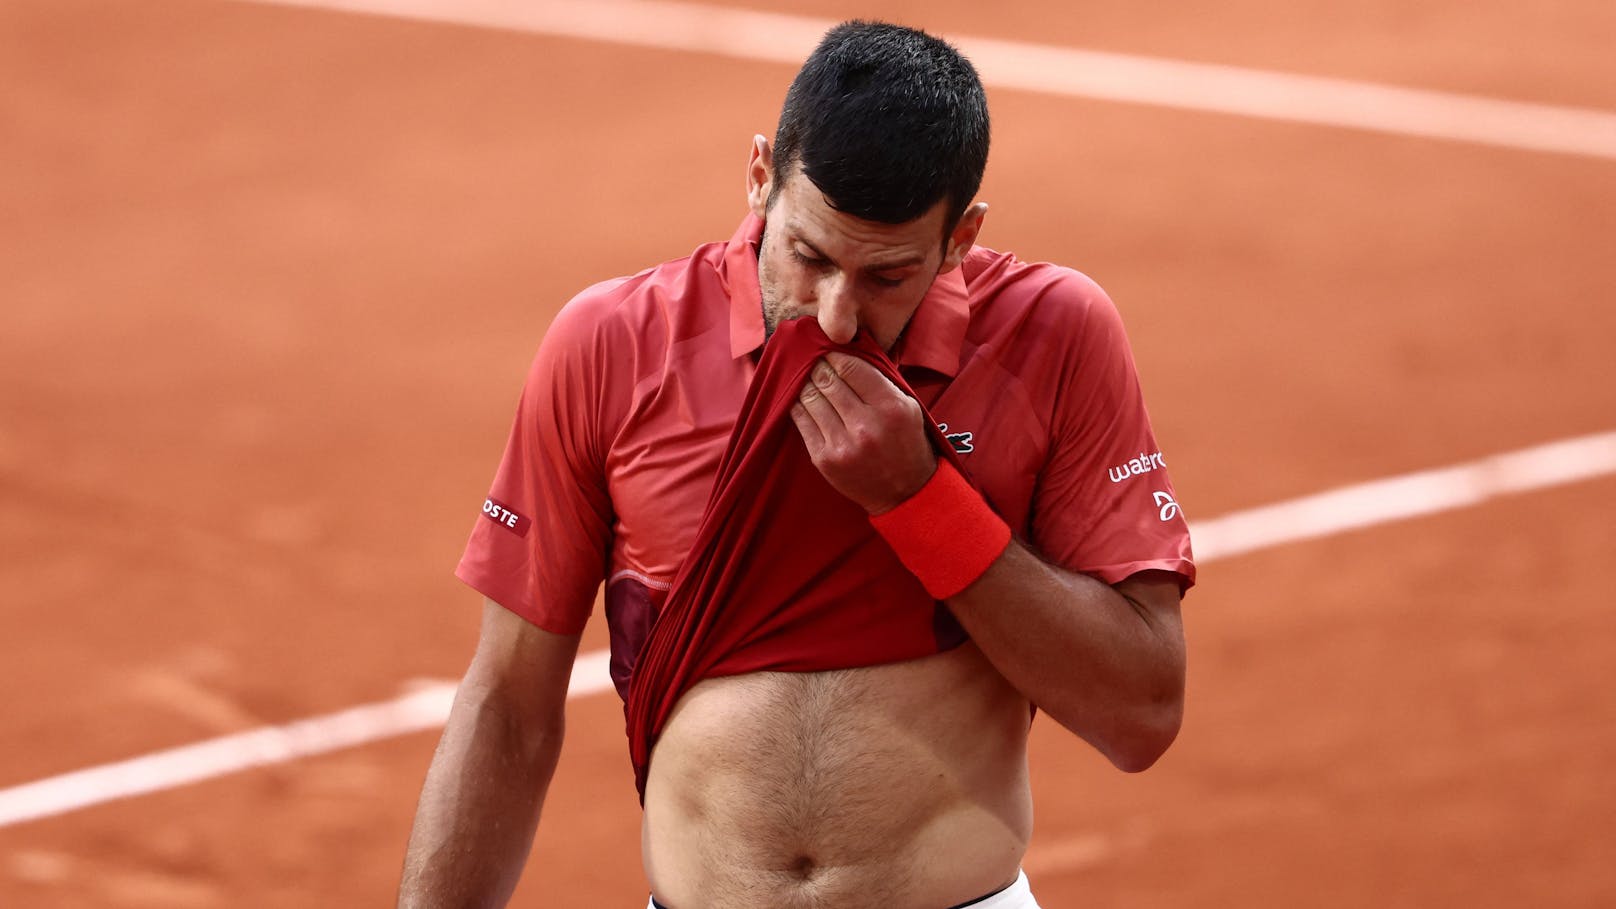 Arzt hat düstere Prognose für Tennis-Star Djokovic